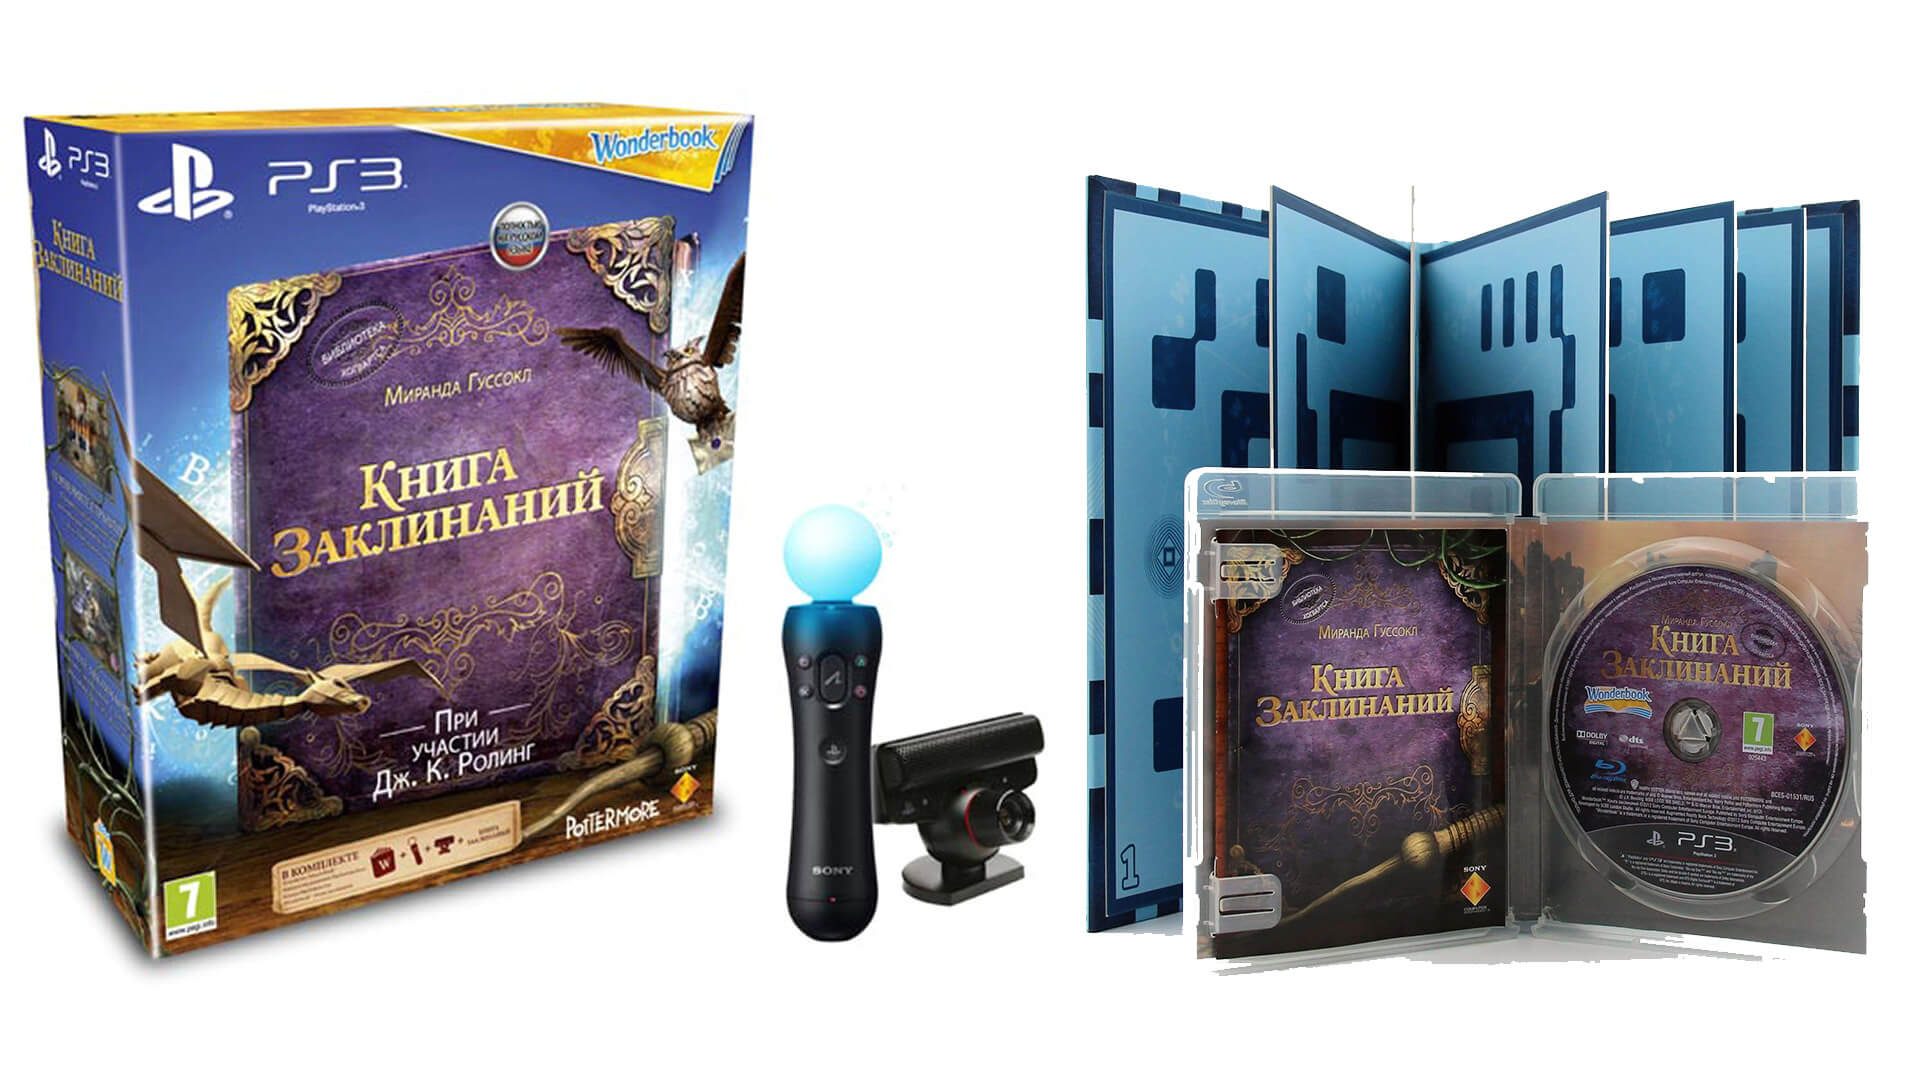 Лицензионный диск Wonderbook Book of Spells для PlayStation 3